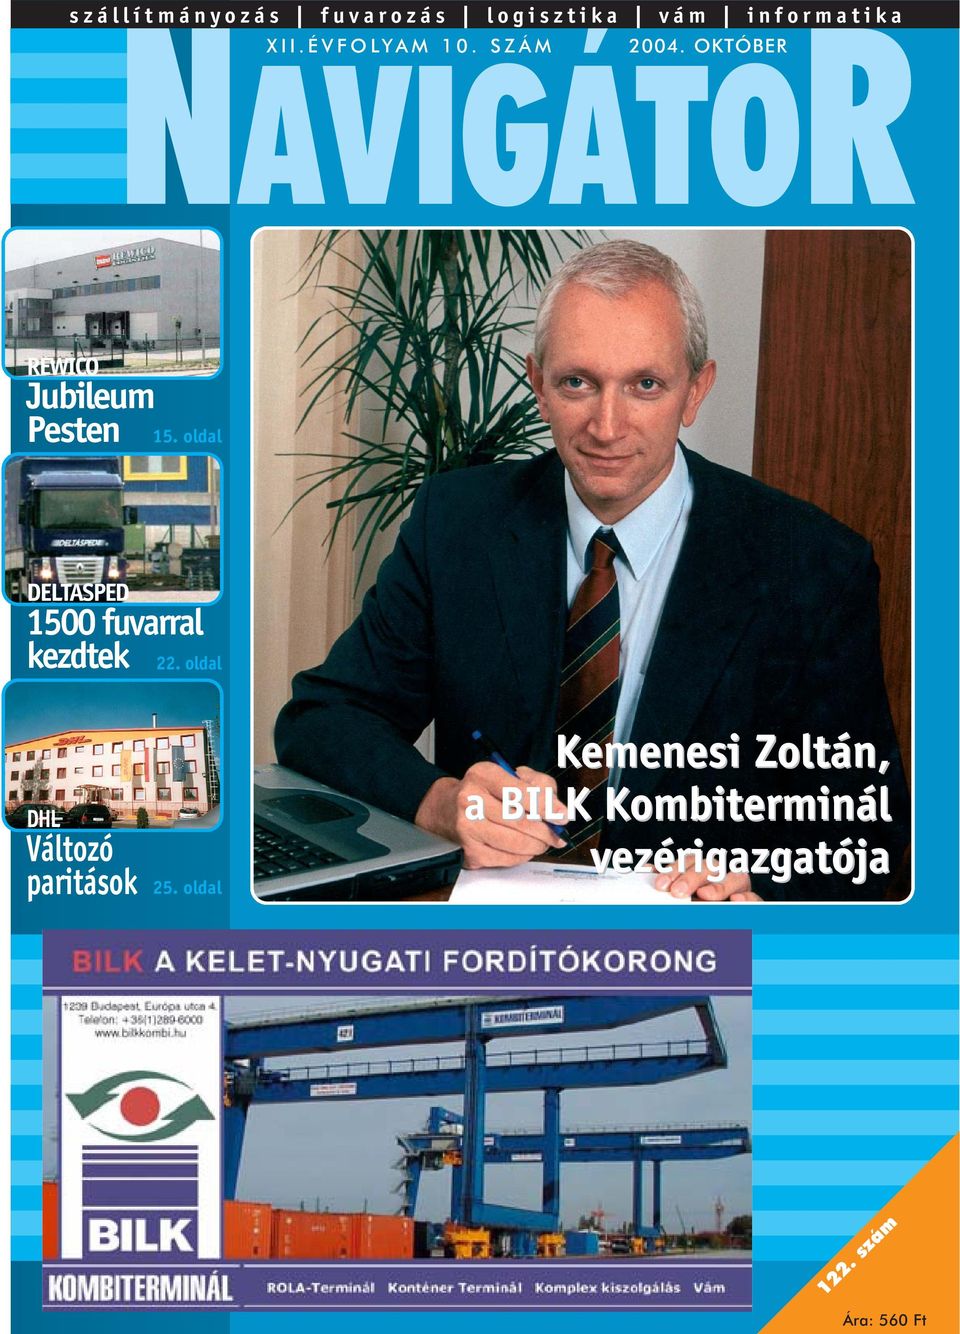 Kemenesi Zoltán, a BILK Kombiterminál vezérigazgatója. Jubileum Pesten 15.  oldal fuvarral kezdtek 22. oldal. Változó paritások PDF Free Download